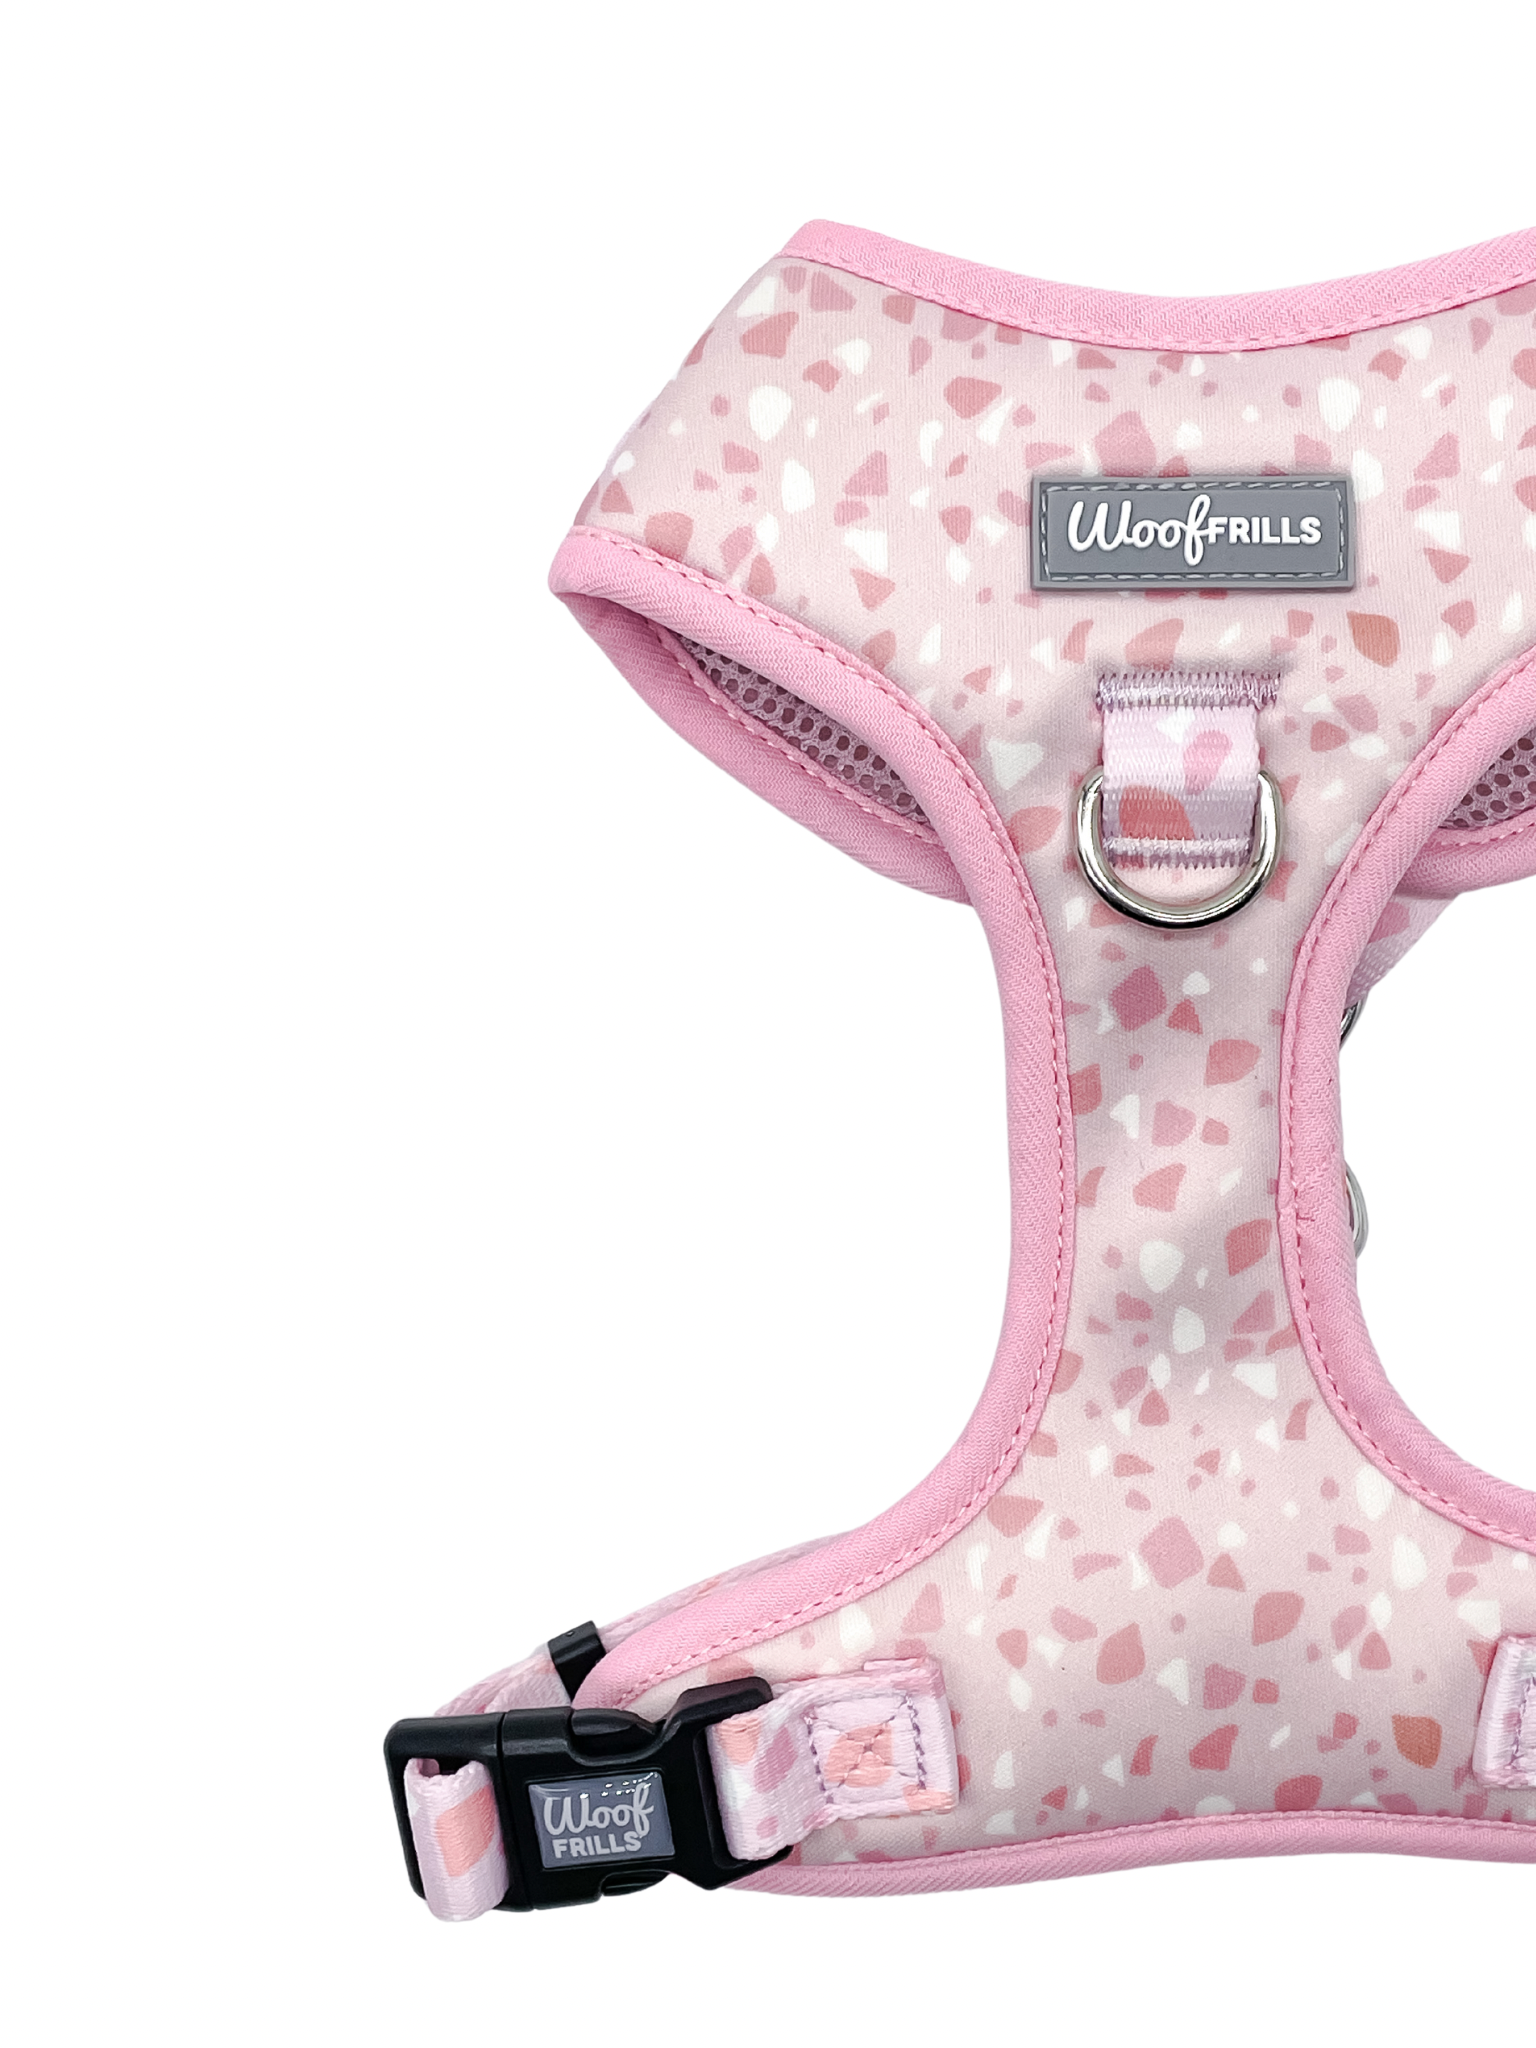 Pink adjustable dog harness